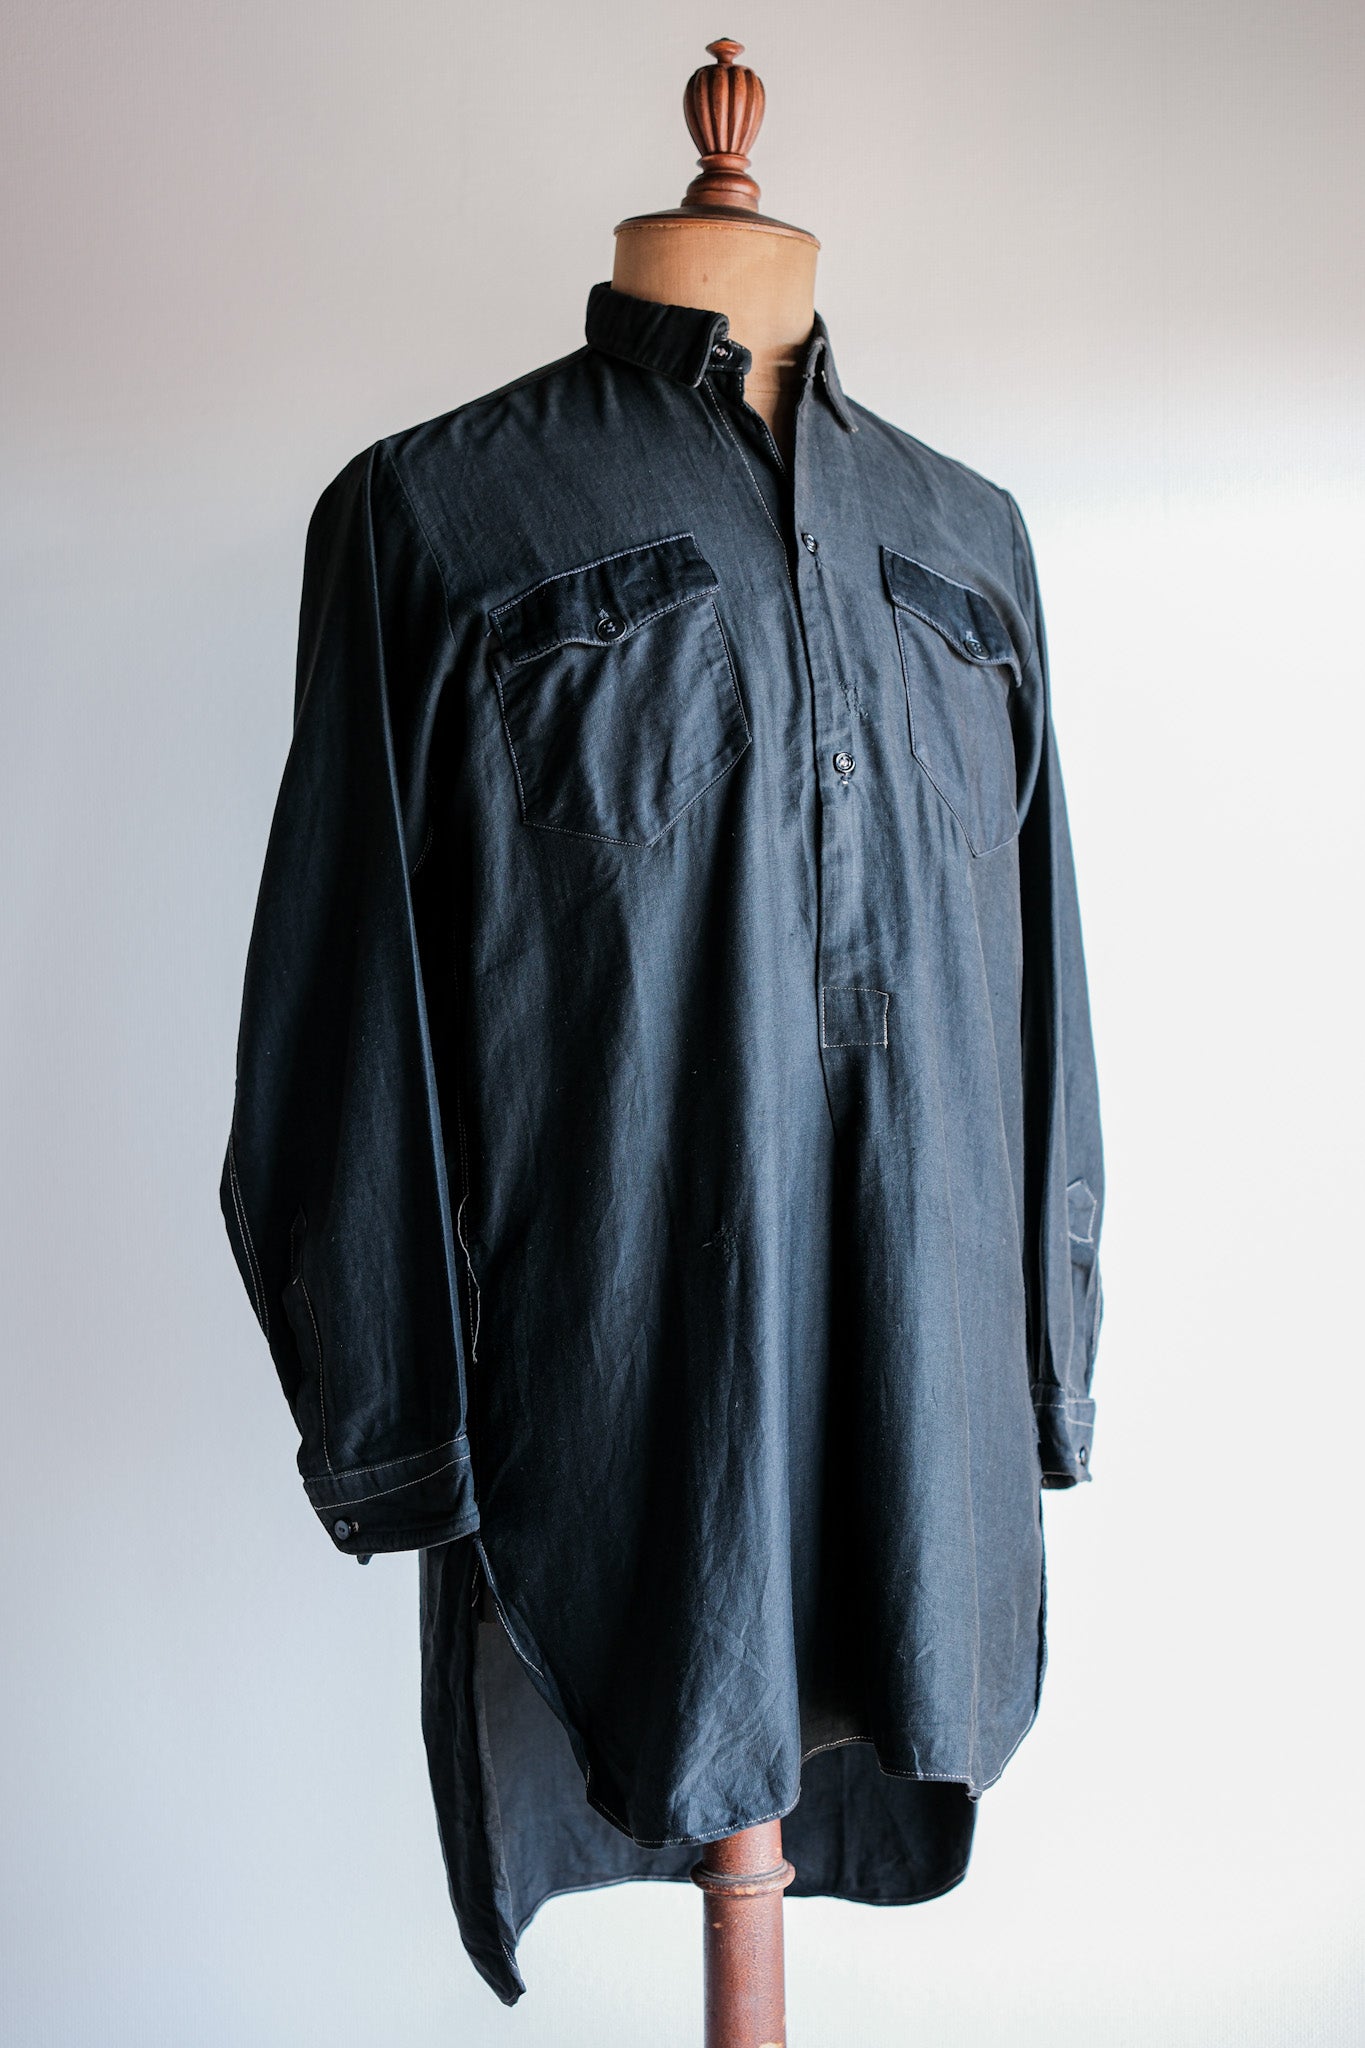 [~ 30 '] 프랑스 빈티지 검은 빛 몰라 스킨 할아버지 셔츠